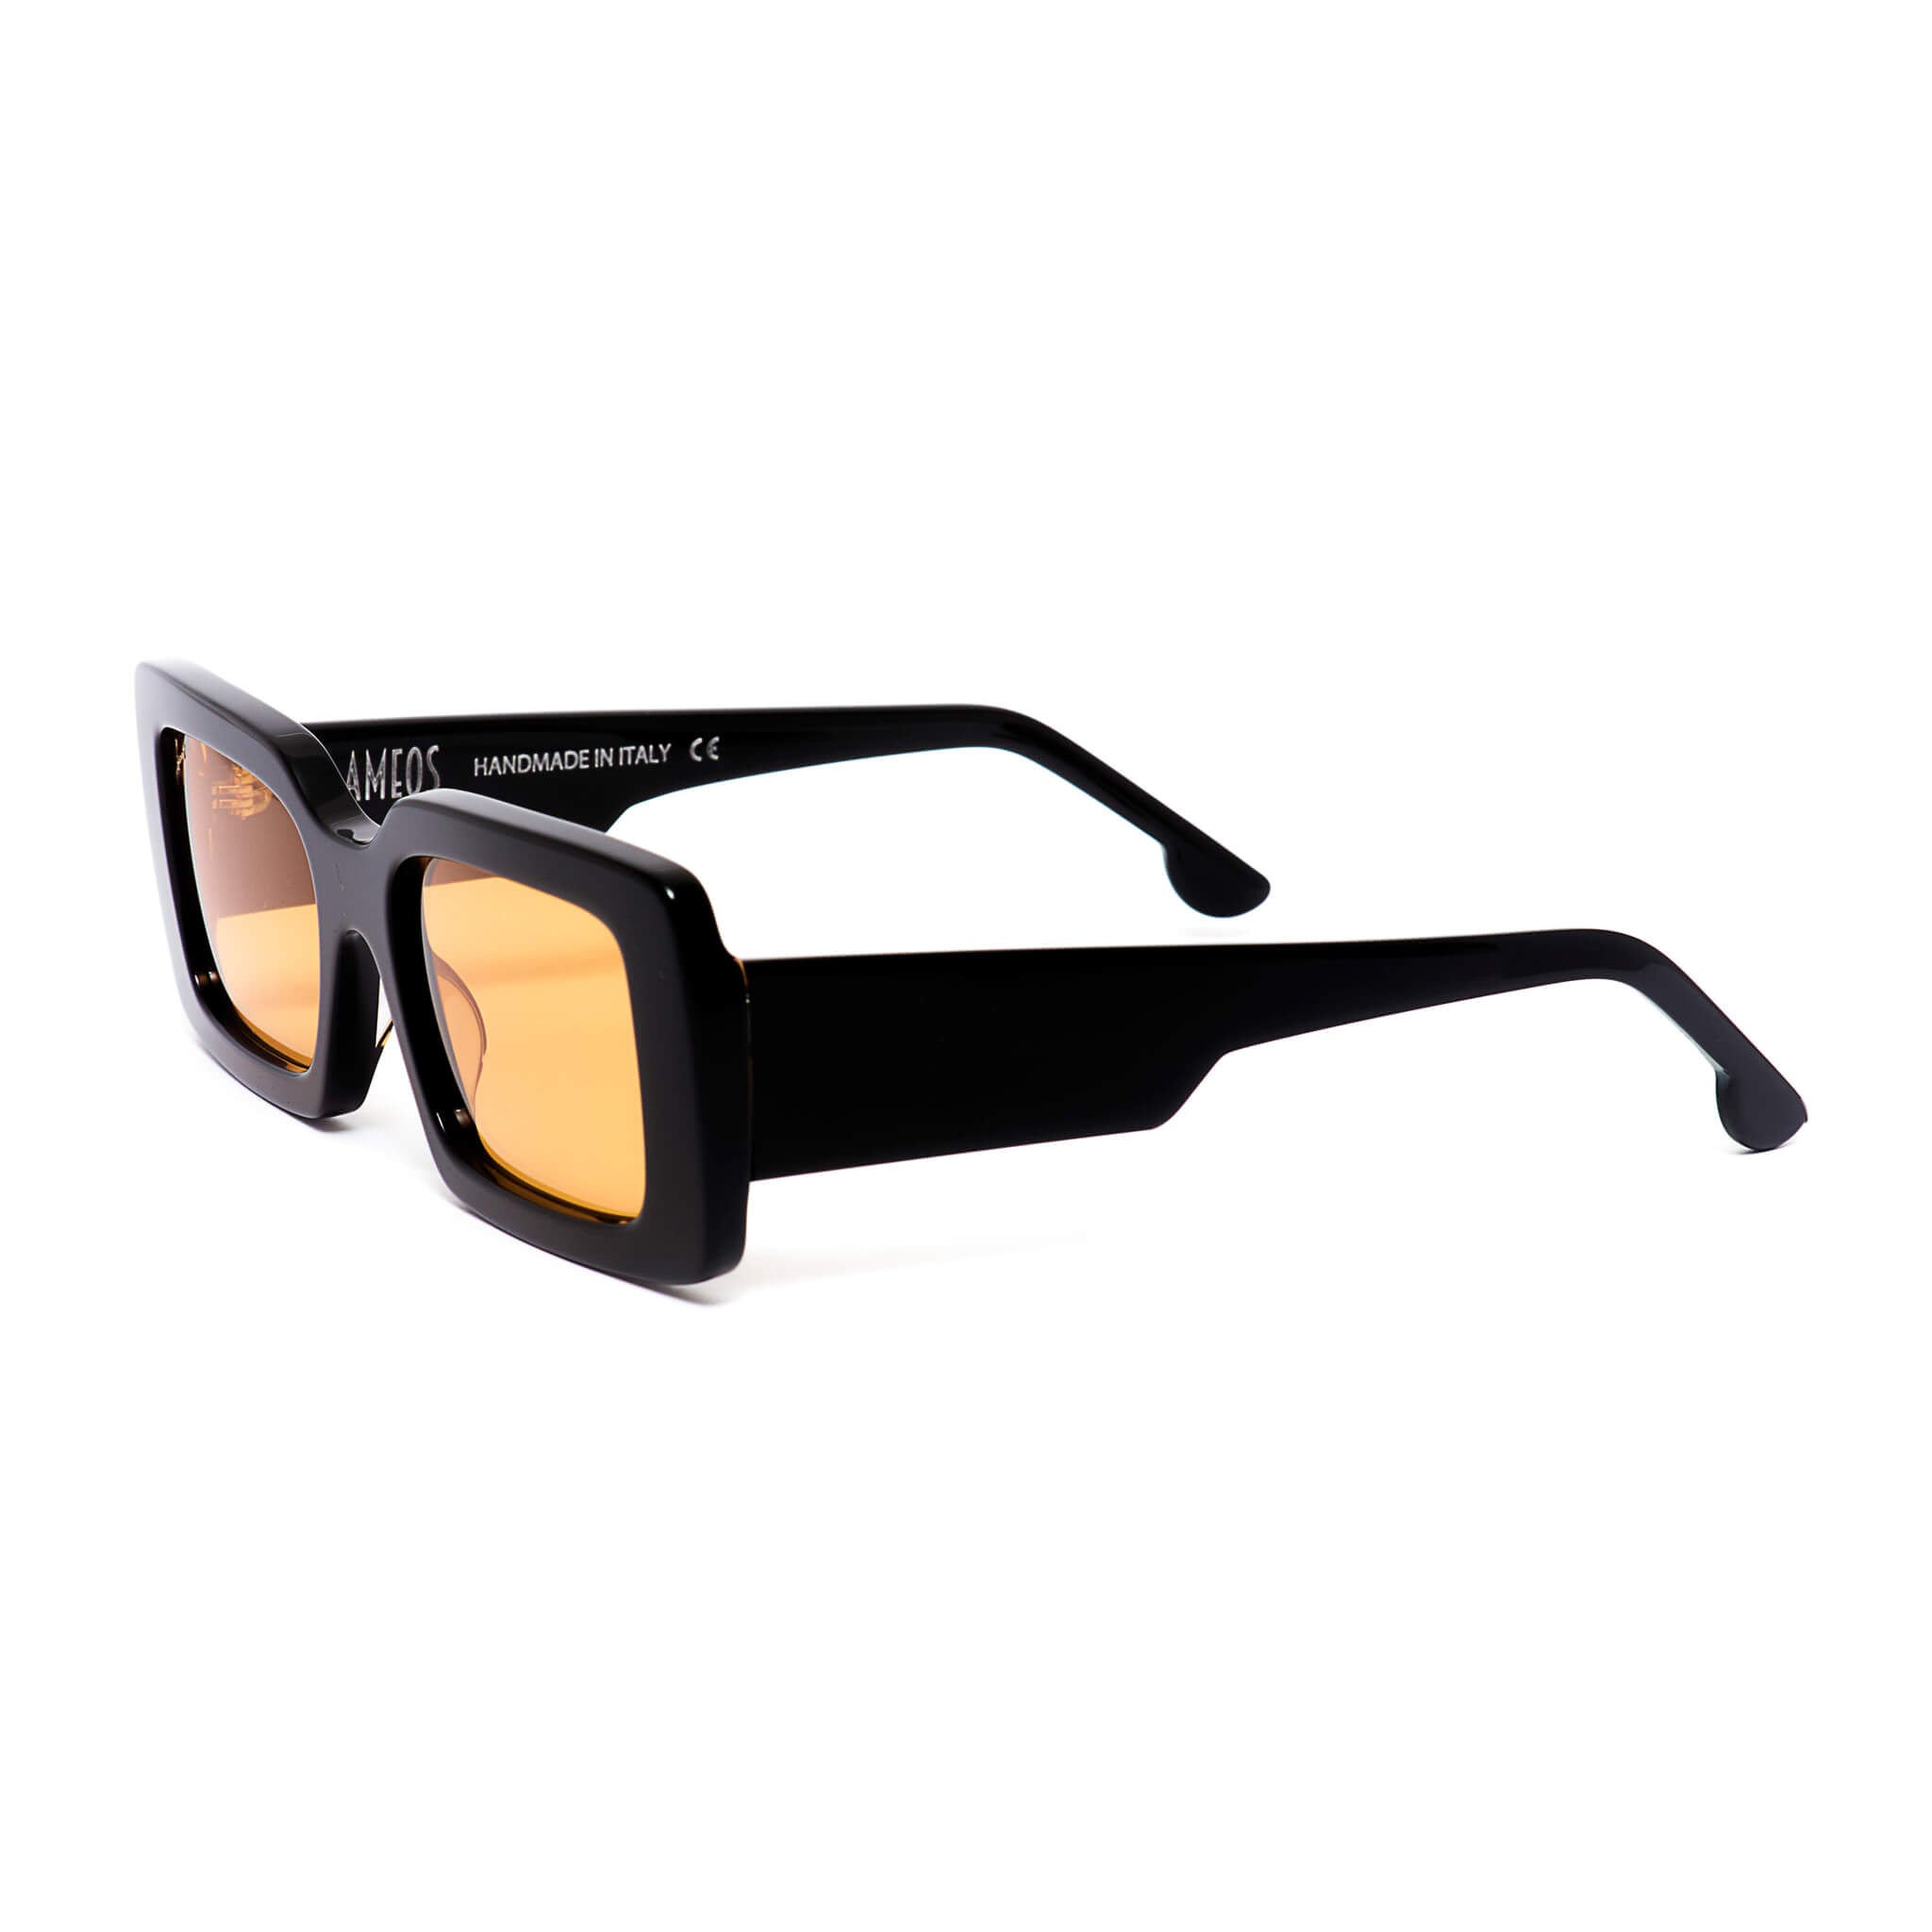 Black rectangular frames with orange lenses sunglasses handmade in italy